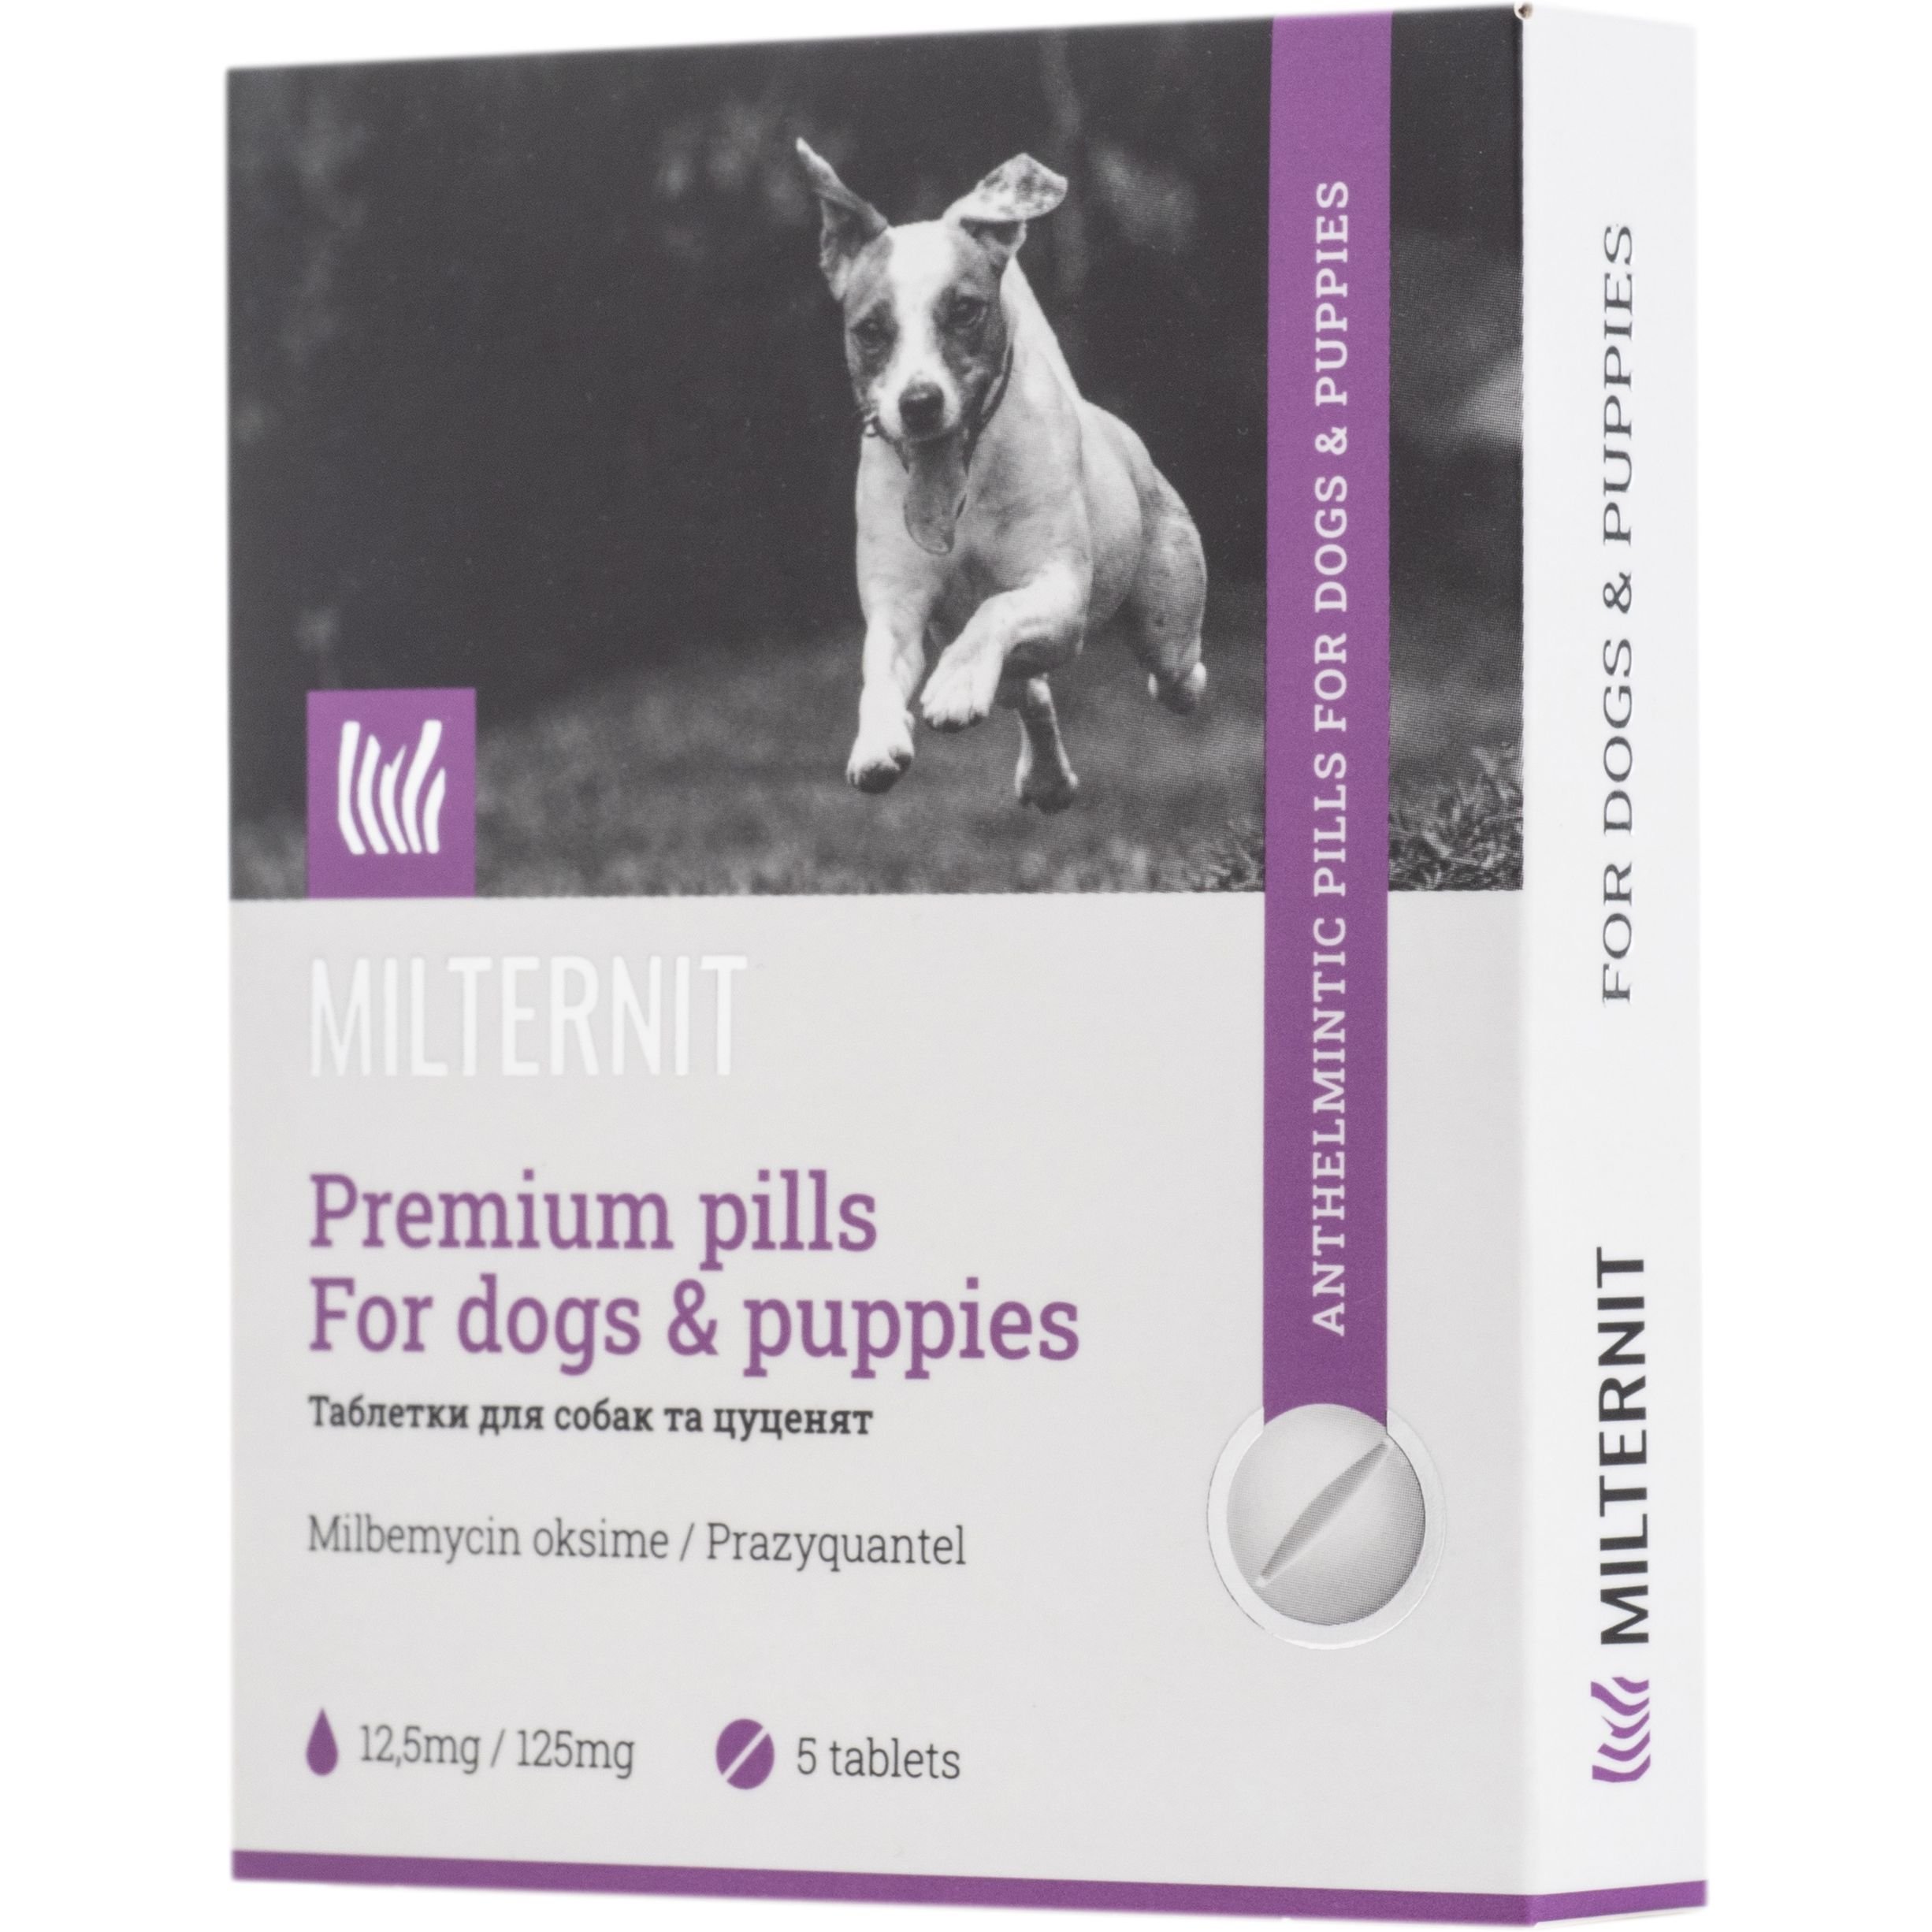 Антигельминтные таблетки Vitomax Milternit для собак и щенков, 5 таблеток - фото 1